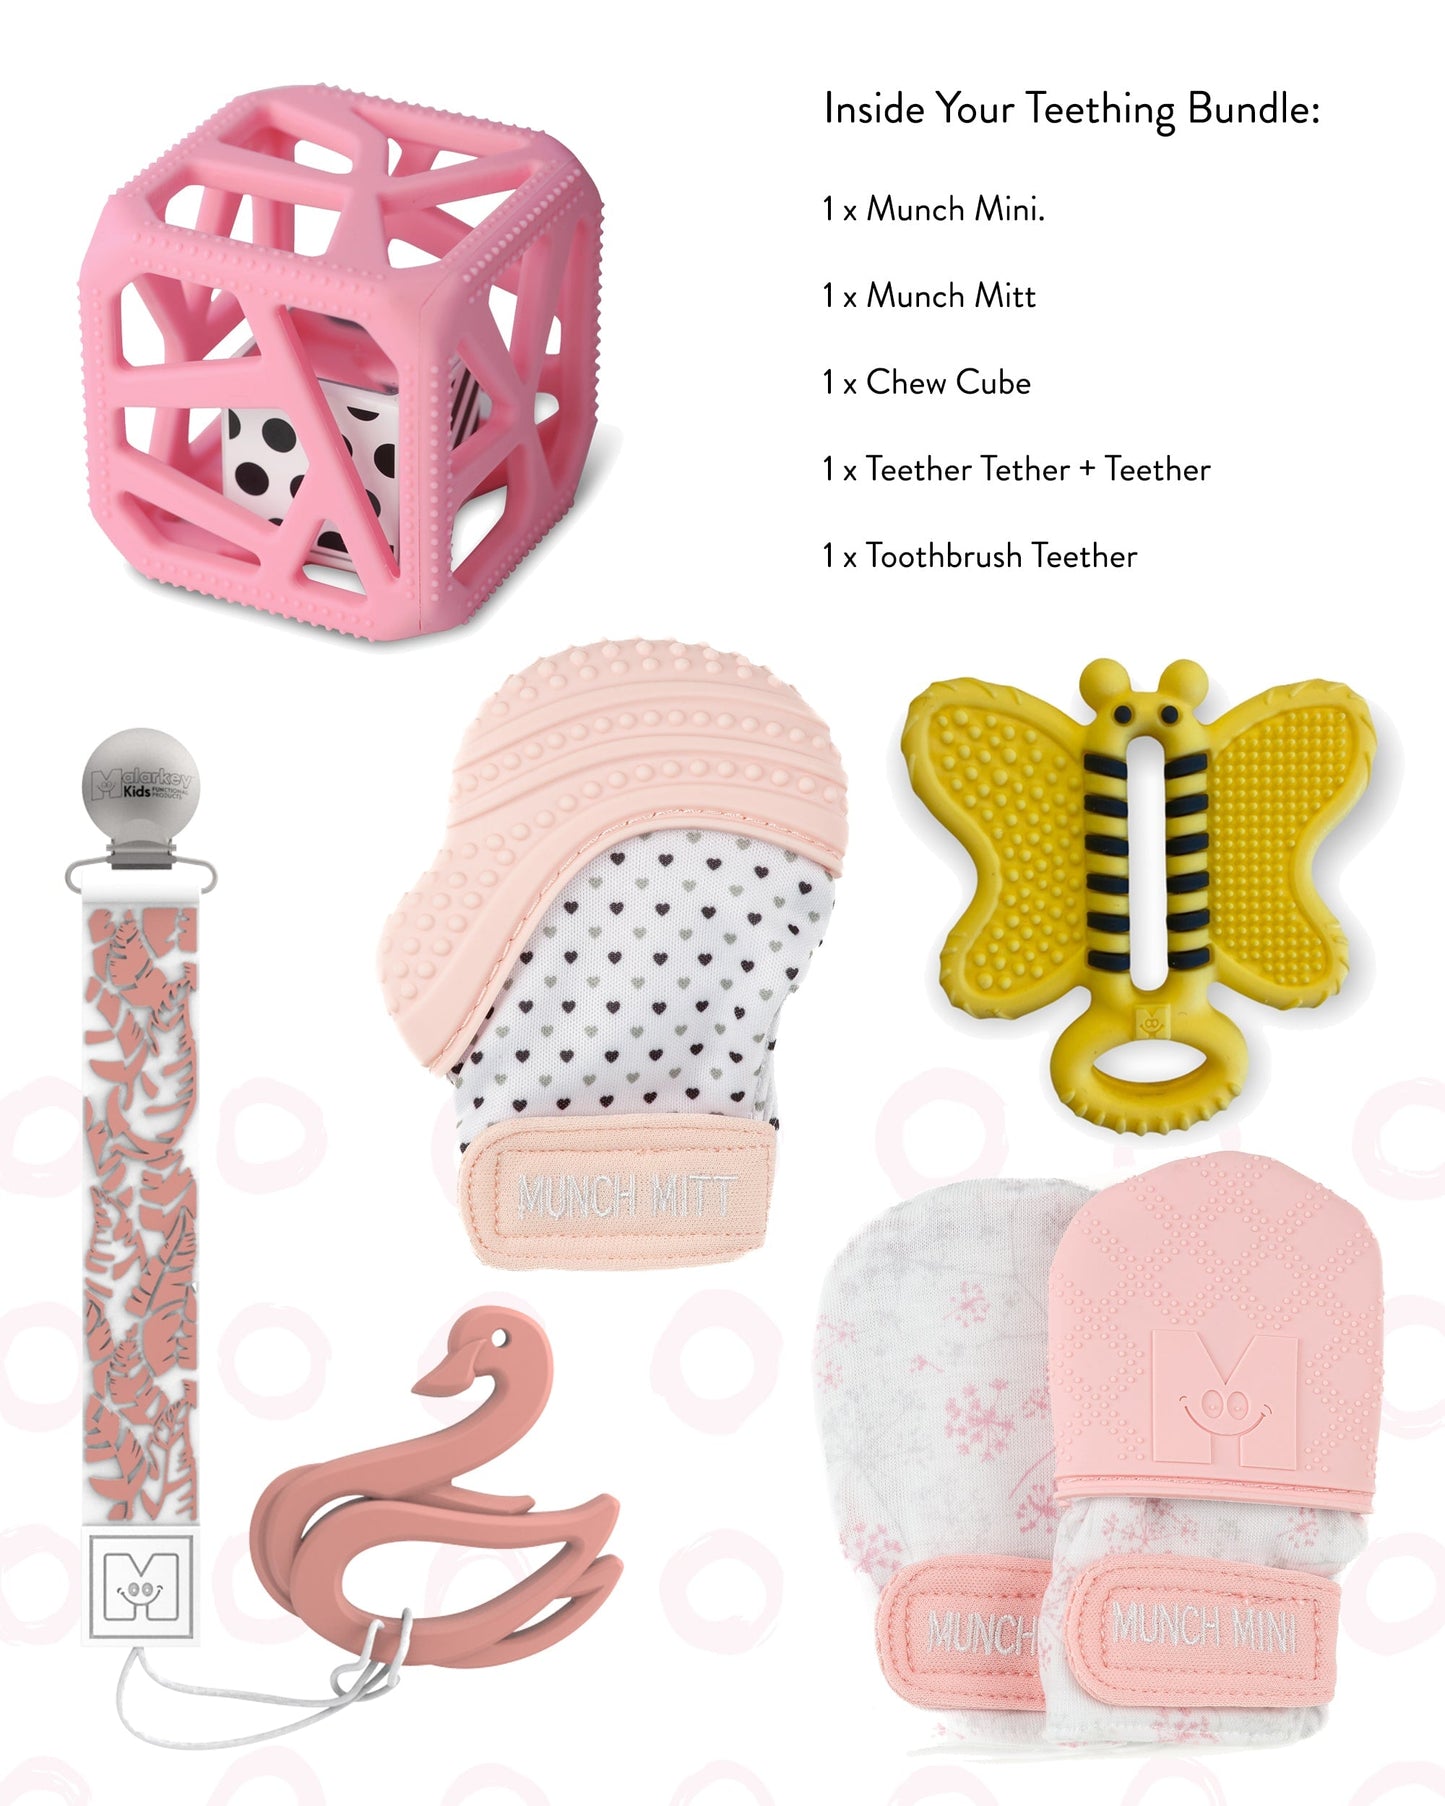 Teething Bundle Gift Pack - Pastel Peace Baby & Toddler Malarkey Kids CA 